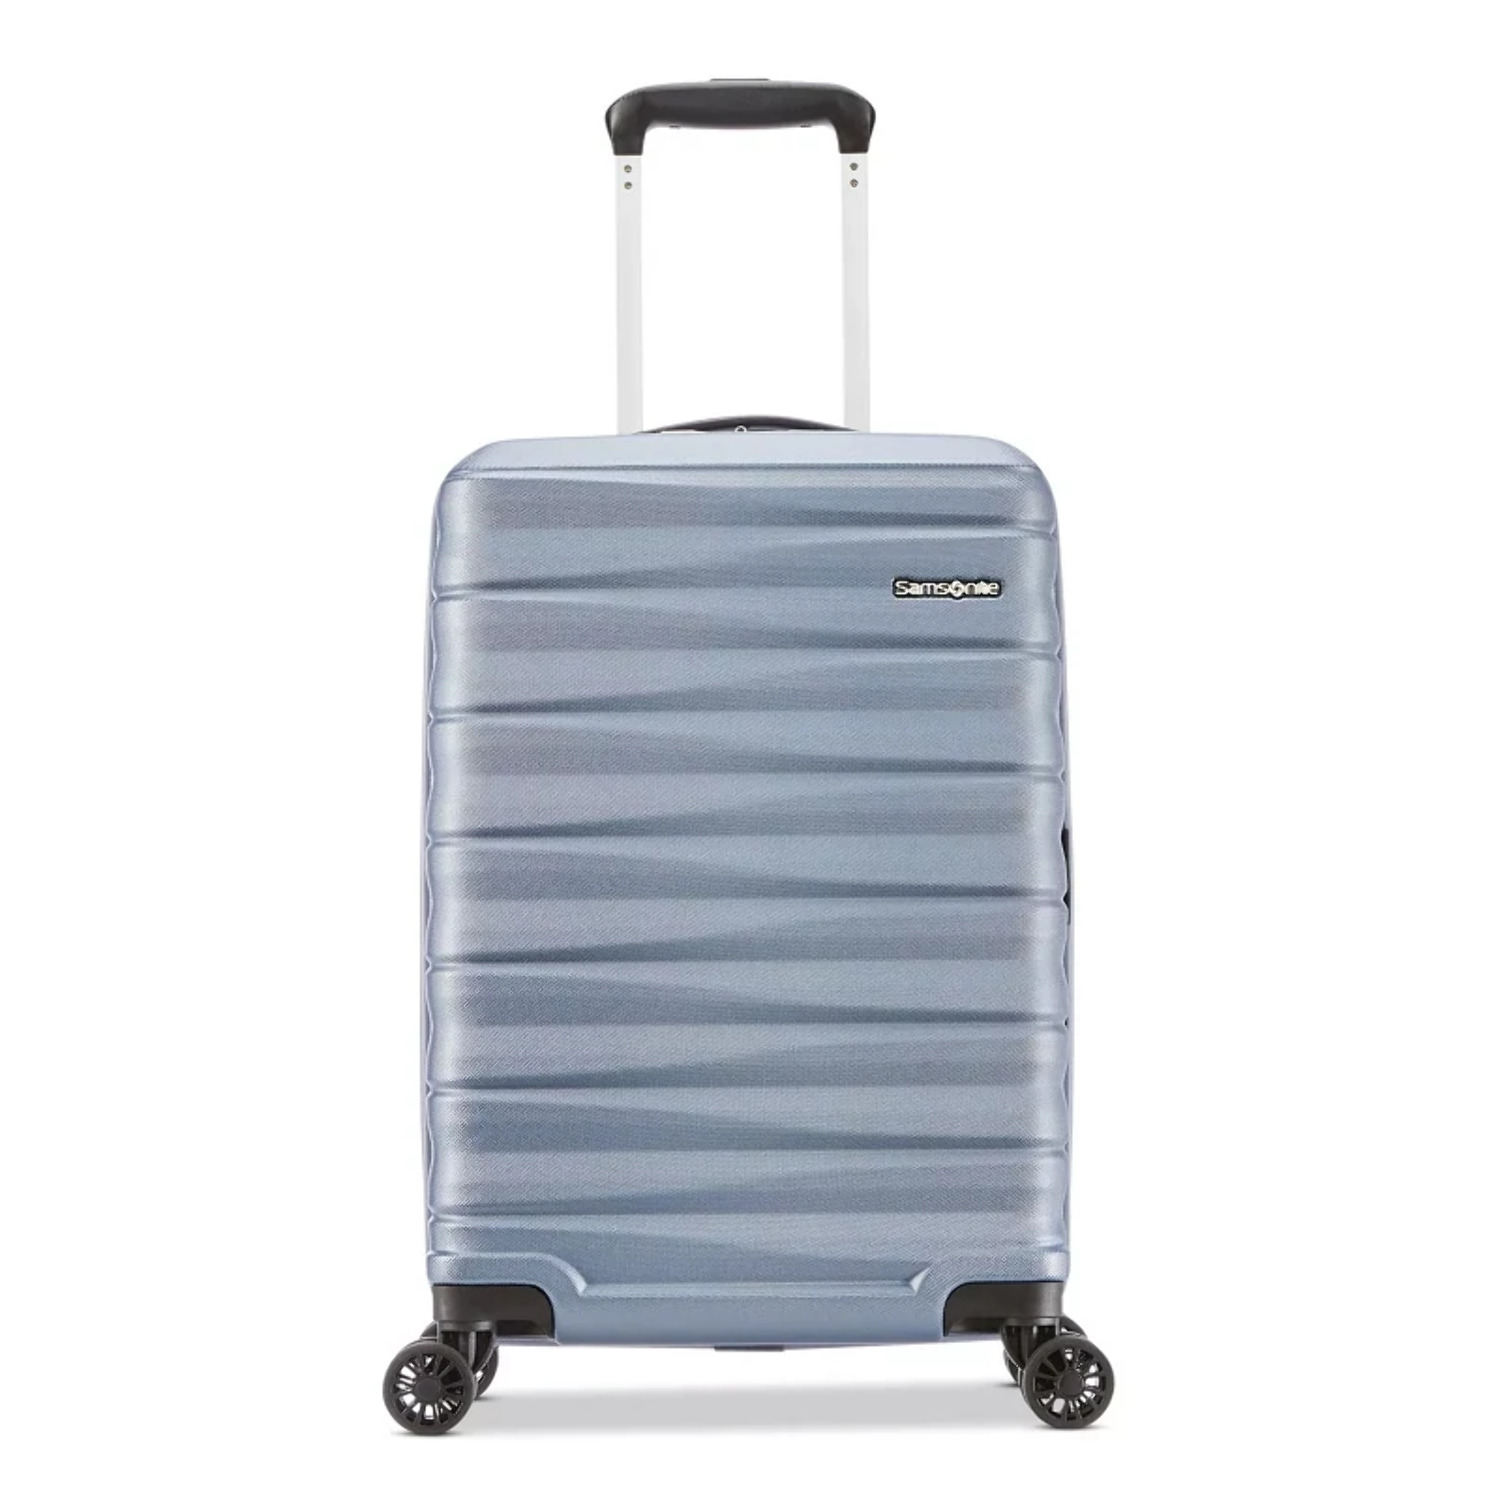 Samsonite Kingsbury Hardside Suitcase 2-Piece Luggage Set - Slate Blue - New - image 4 of 11